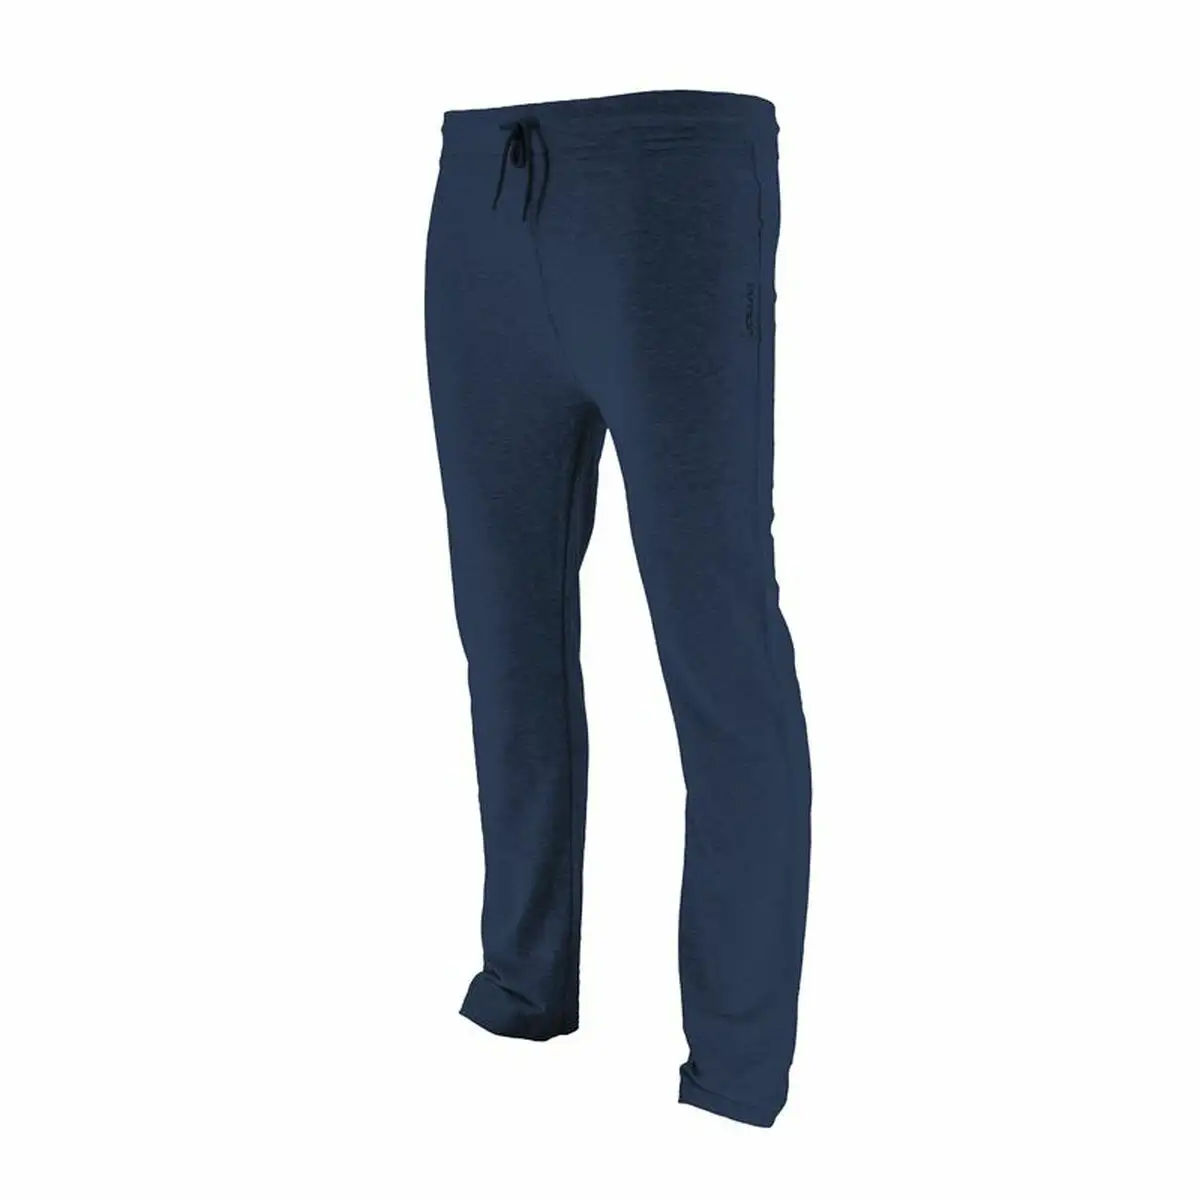 Pantalon de sport long joluvi fit campus blue marine bleu fonce unisexe_4002. DIAYTAR SENEGAL - Là où la Tradition Devient Tendance. Naviguez à travers notre boutique en ligne et choisissez des produits qui allient l'authenticité au contemporain.